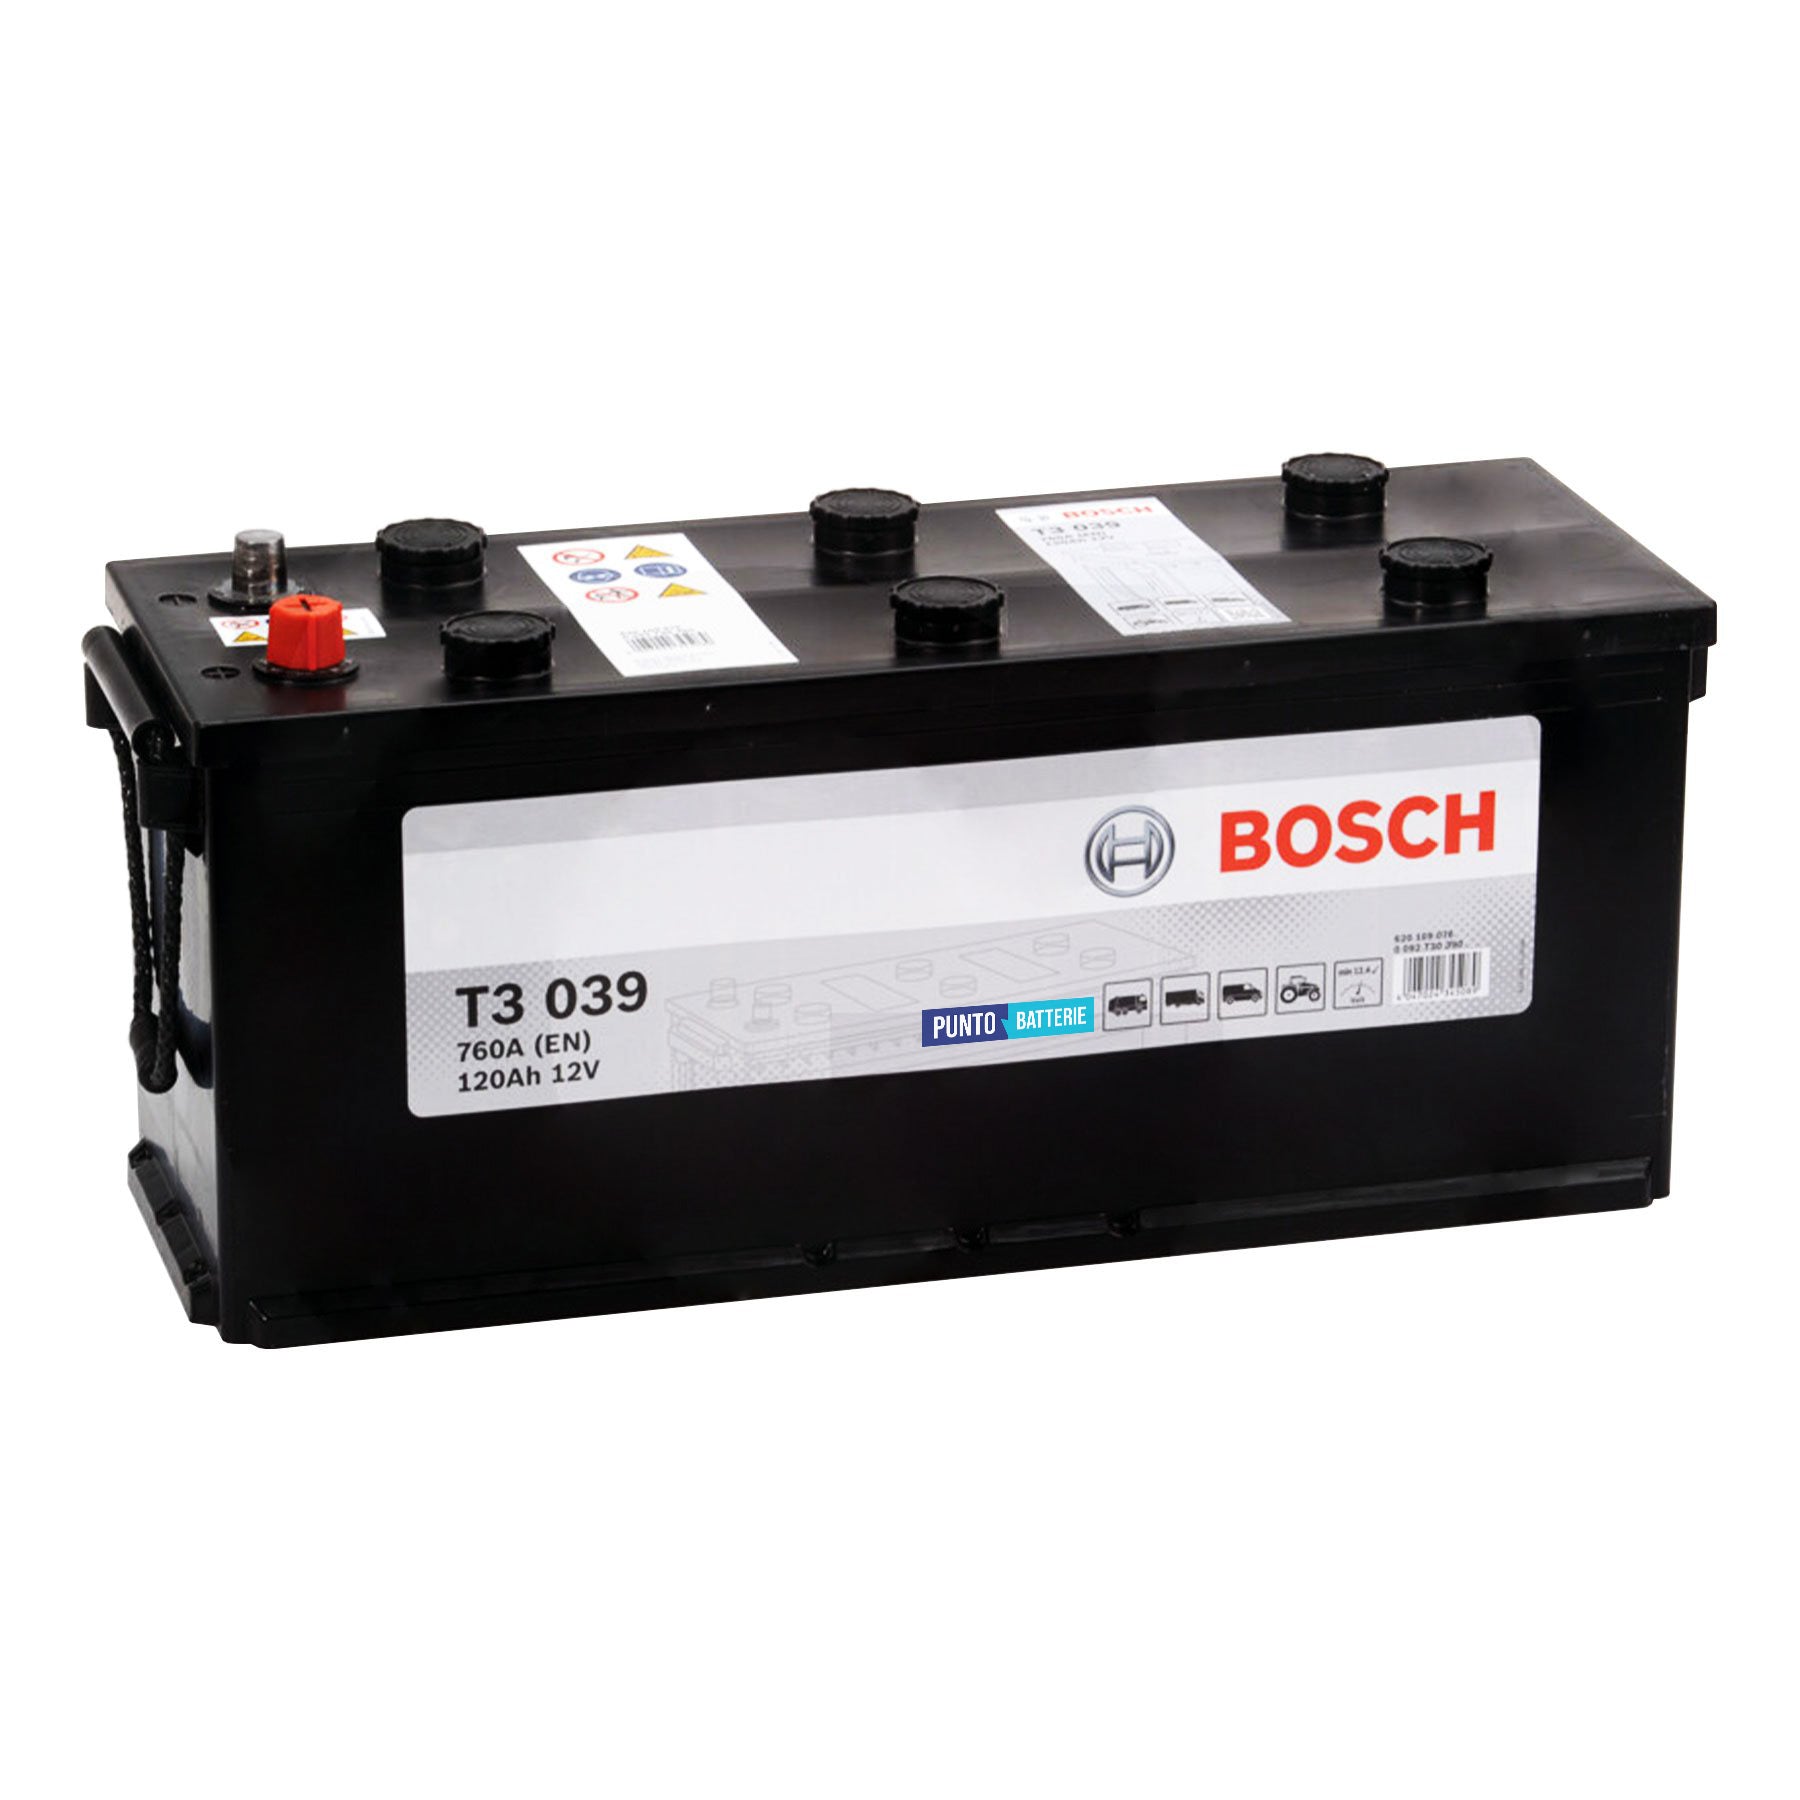 Batteria originale Bosch T3 T3039, dimensioni 510 x 175 x 227, polo positivo a destra, 12 volt, 120 amperora, 760 ampere. Batteria per camion e veicoli pesanti.